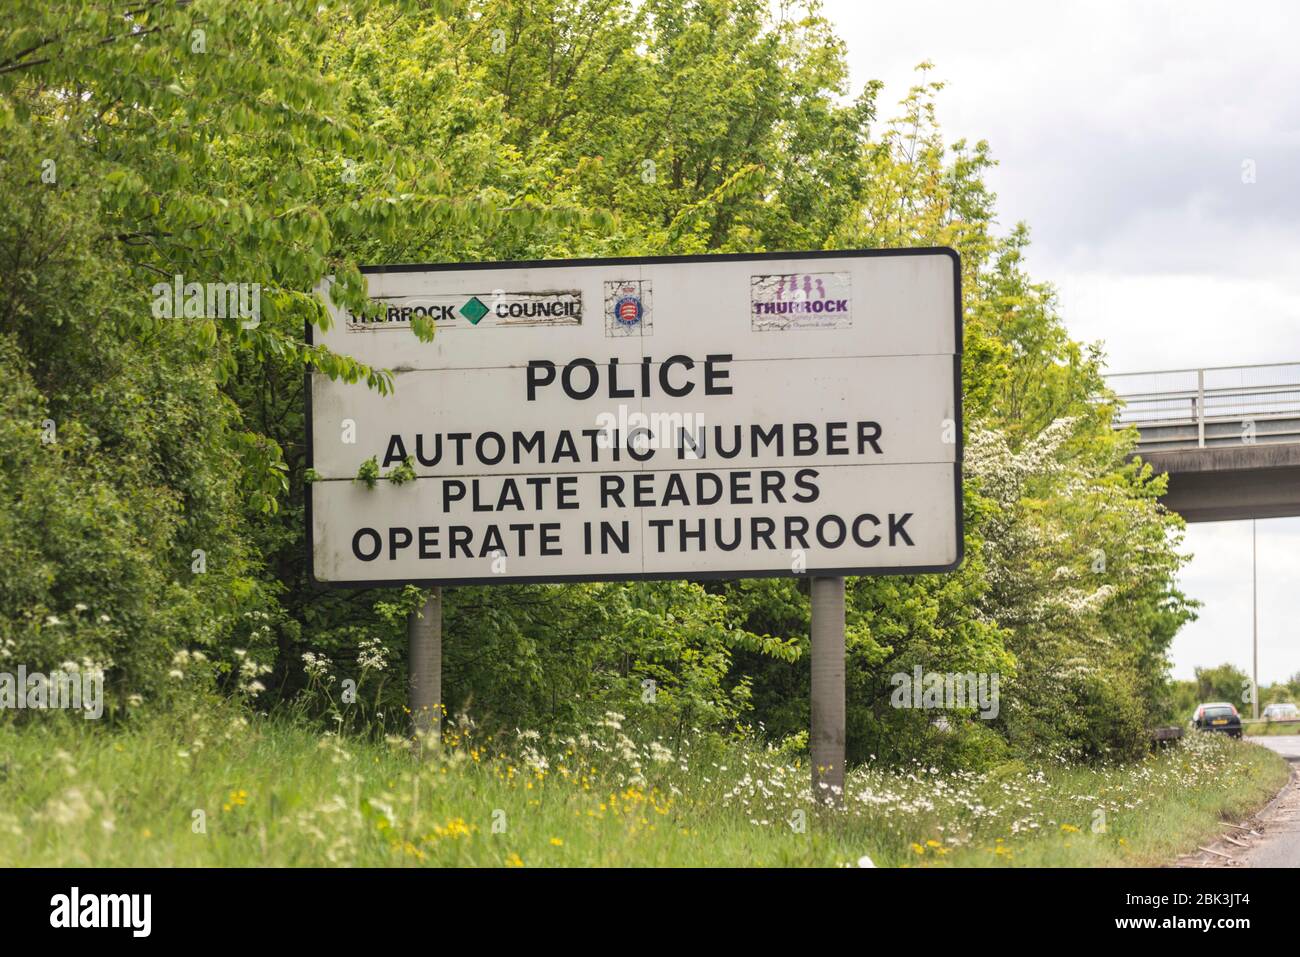 Les lecteurs automatiques de plaques d'immatriculation de la police fonctionnent à Thurrock Sign, Essex, Royaume-Uni. Panneau d'avertissement ANPR sur l'A13 près de Stanford le Hope. Reconnaissance de plaque d'immatriculation Banque D'Images